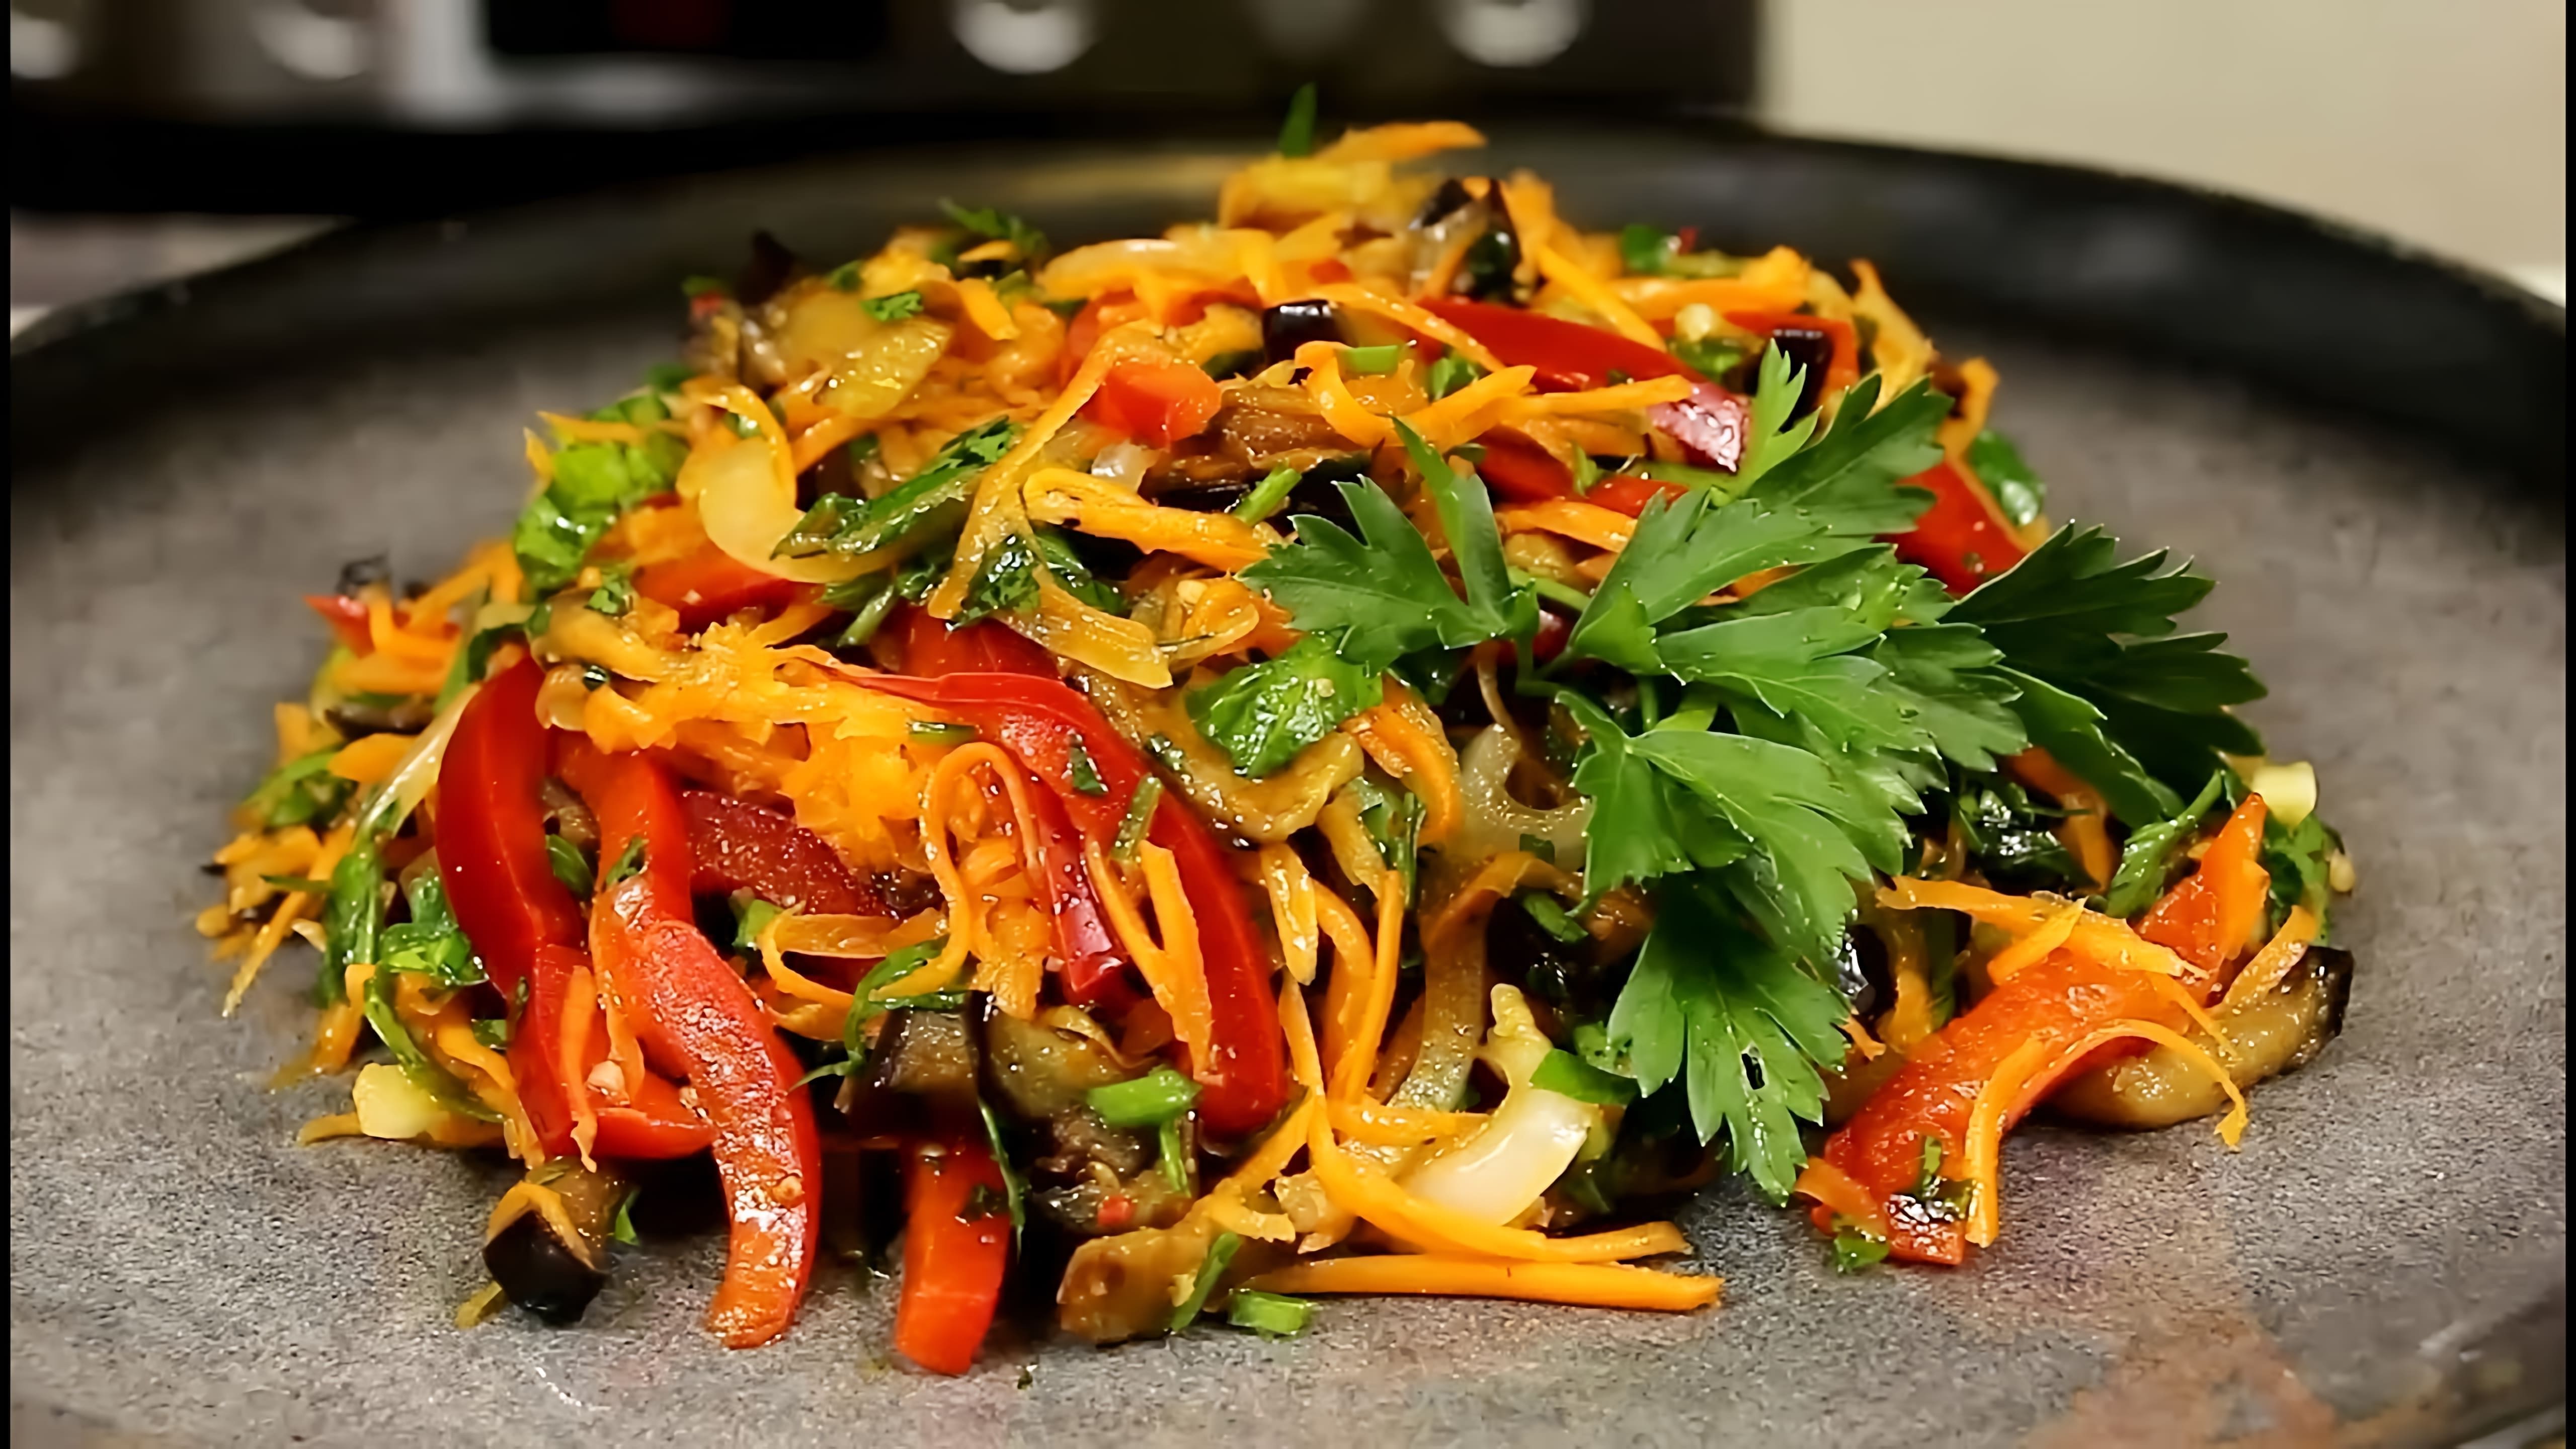 В этом видео демонстрируется рецепт овощного салата с баклажанами, который можно приготовить как для будней, так и для праздничного стола